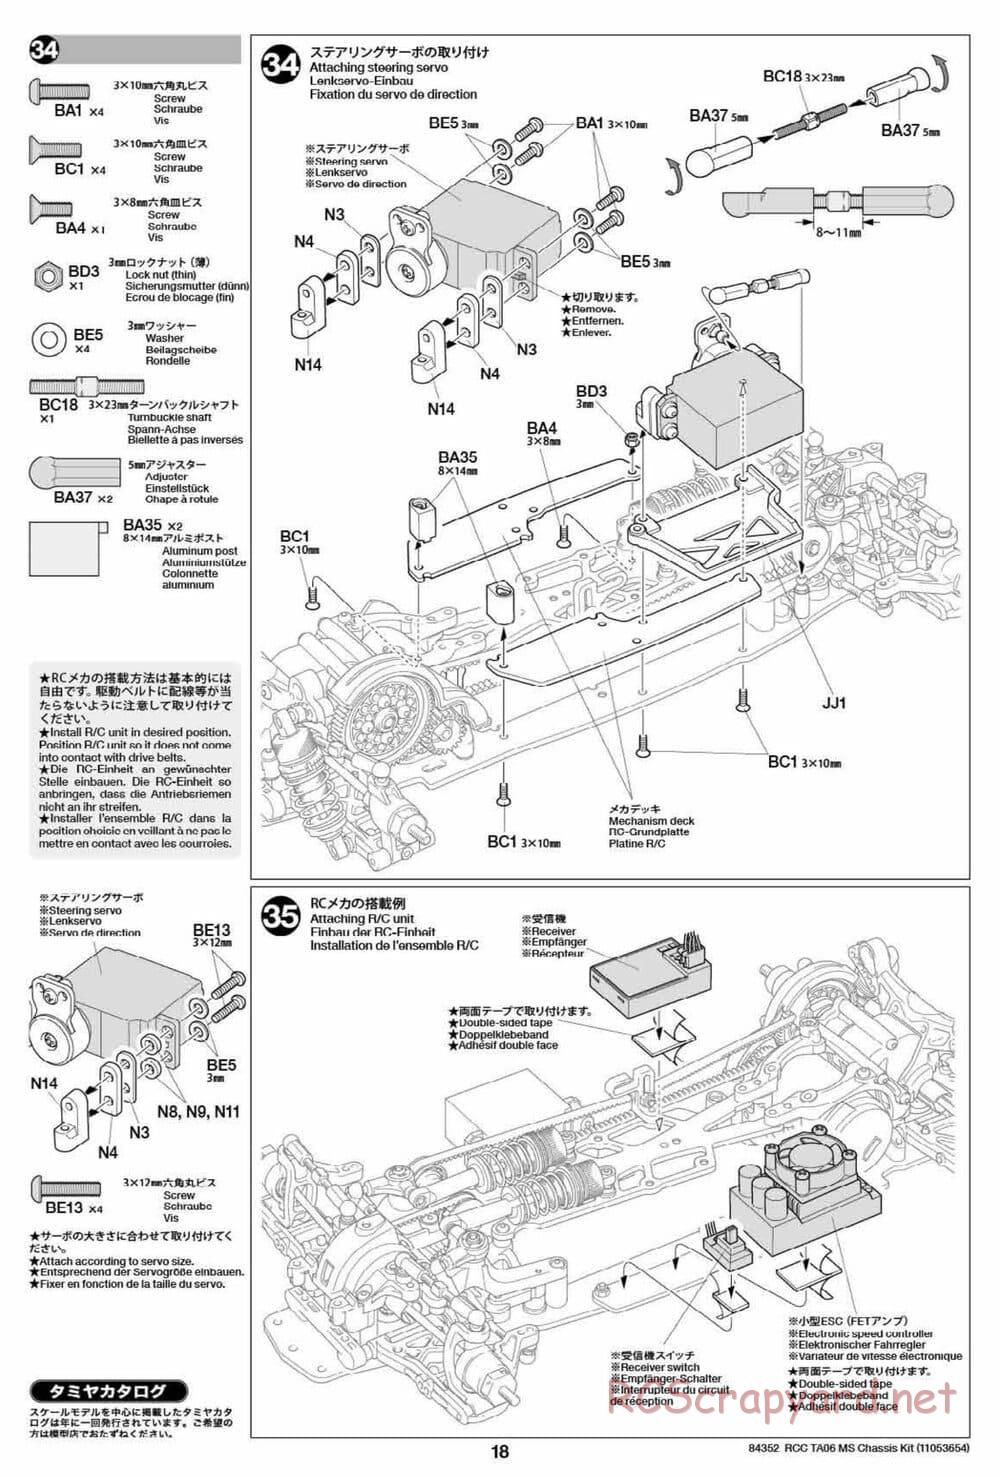 Tamiya - TA06 MS Chassis - Manual - Page 18